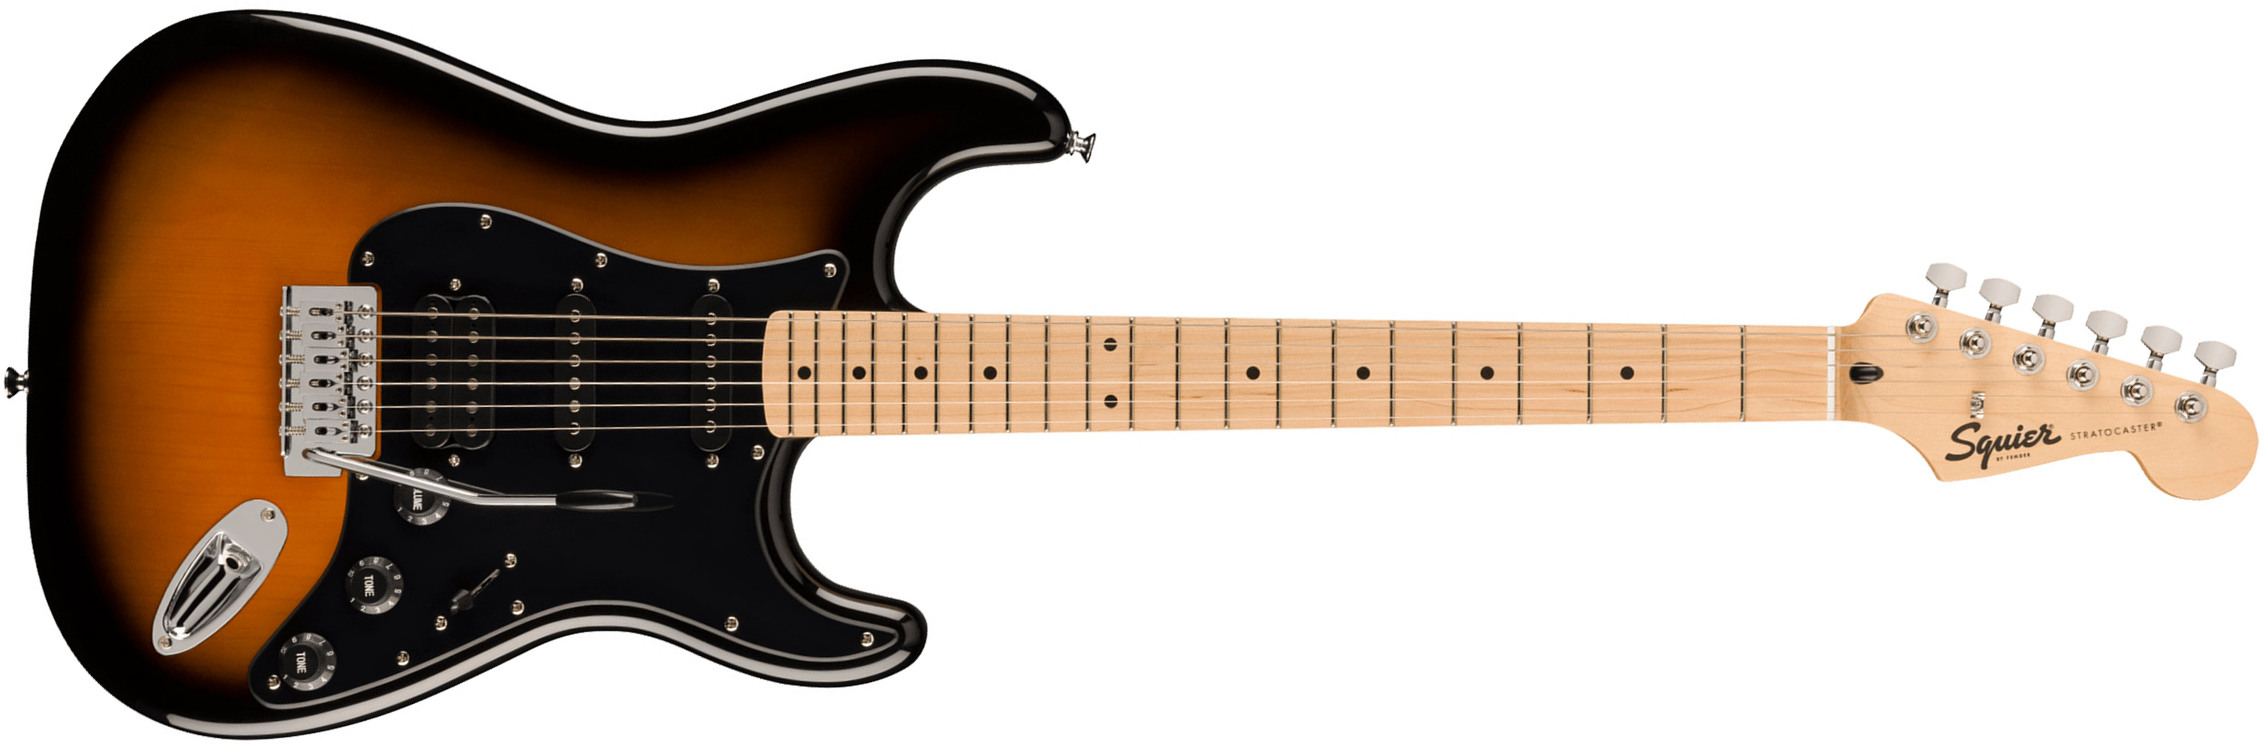 Squier Strat Sonic Hss Trem Mn - 2-color Sunburst - Elektrische gitaar in Str-vorm - Main picture